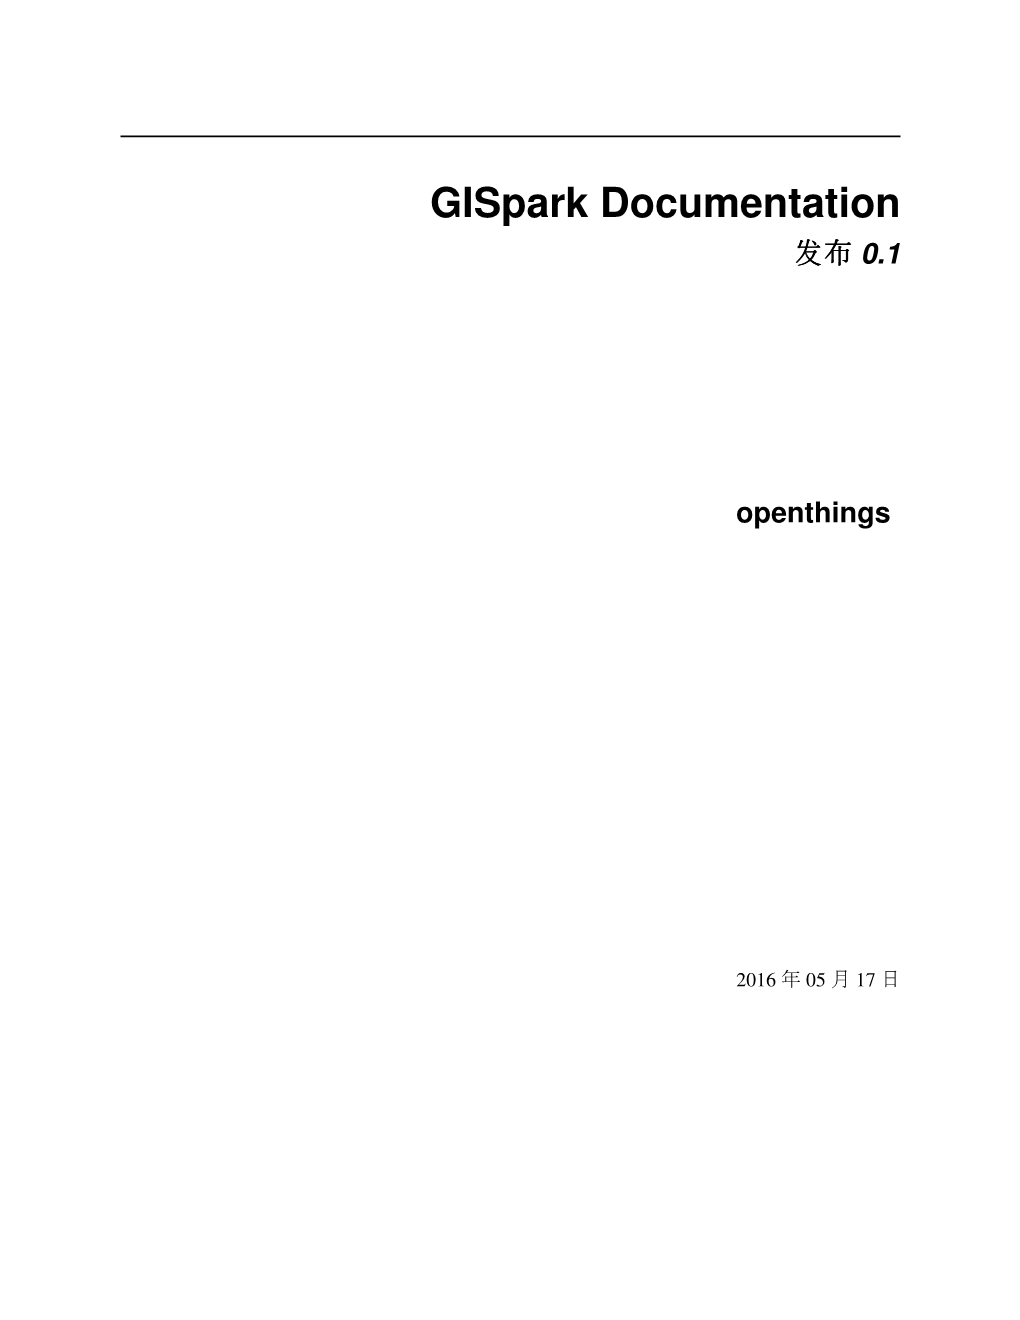 Gispark Documentation 发发发布布布 0.1